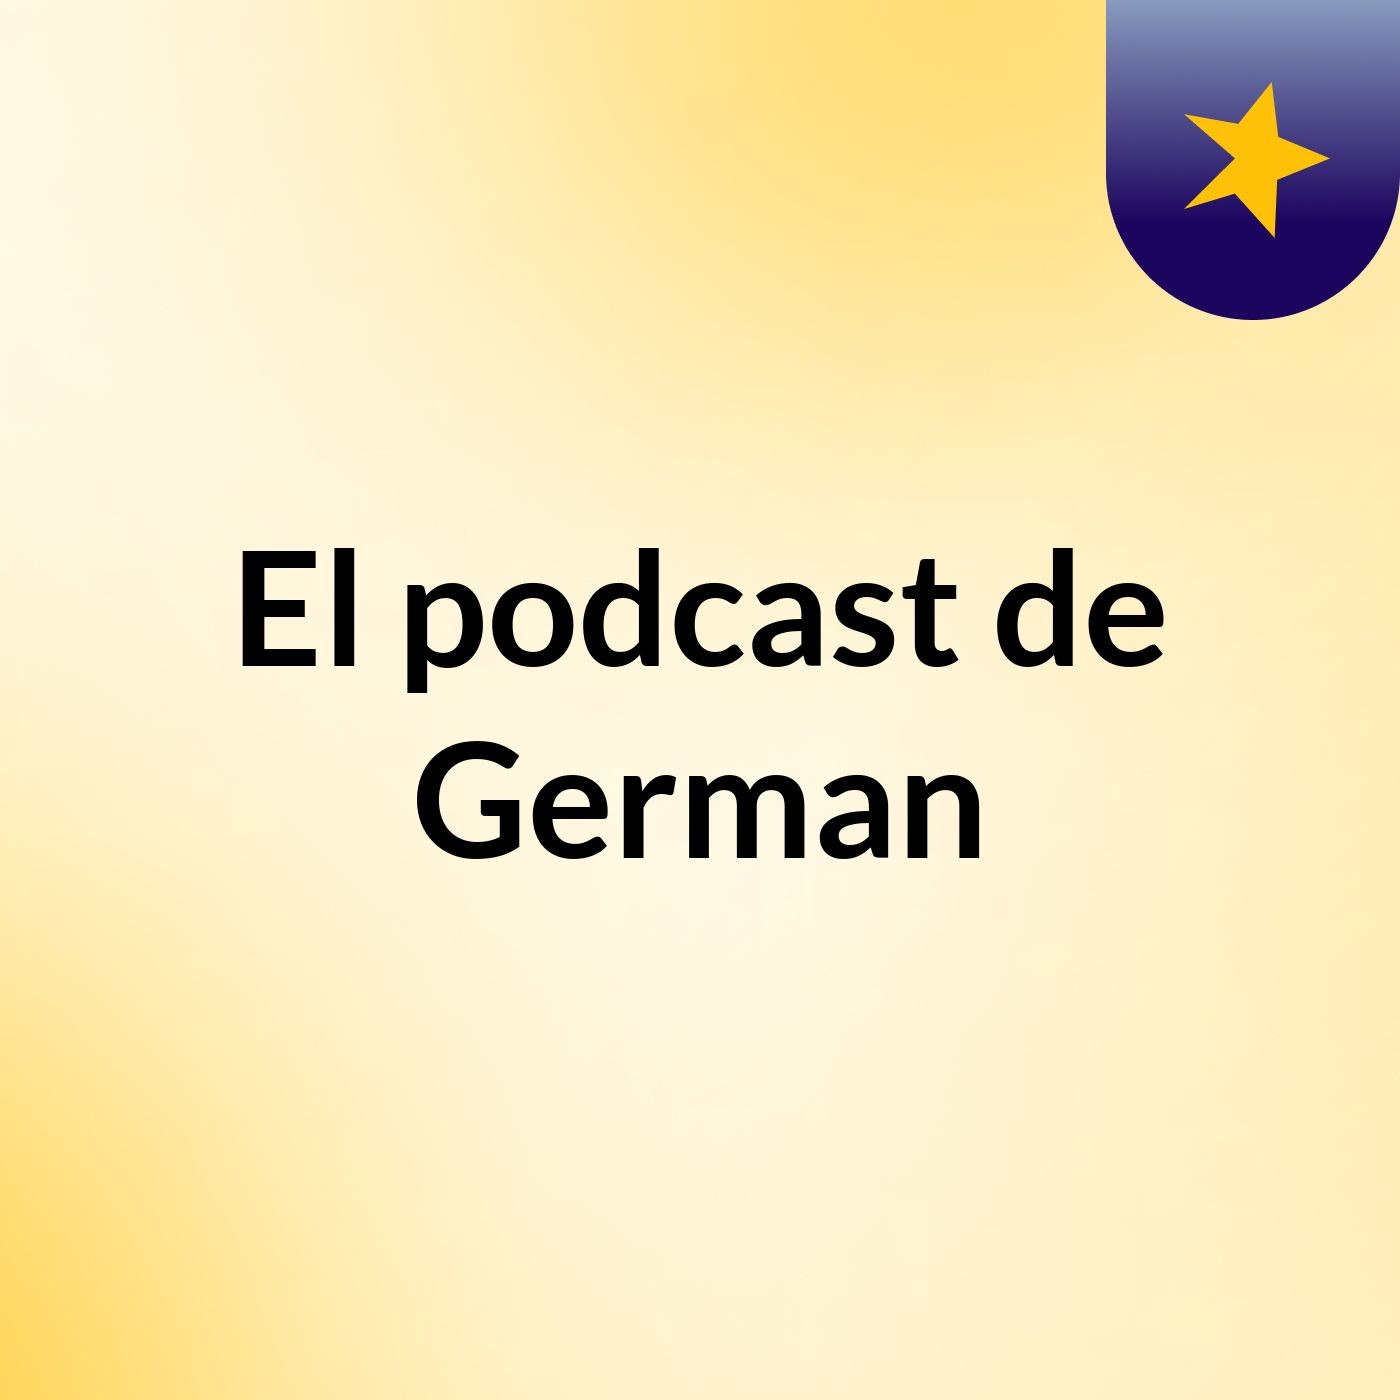 Episodio 5 - El podcast de German